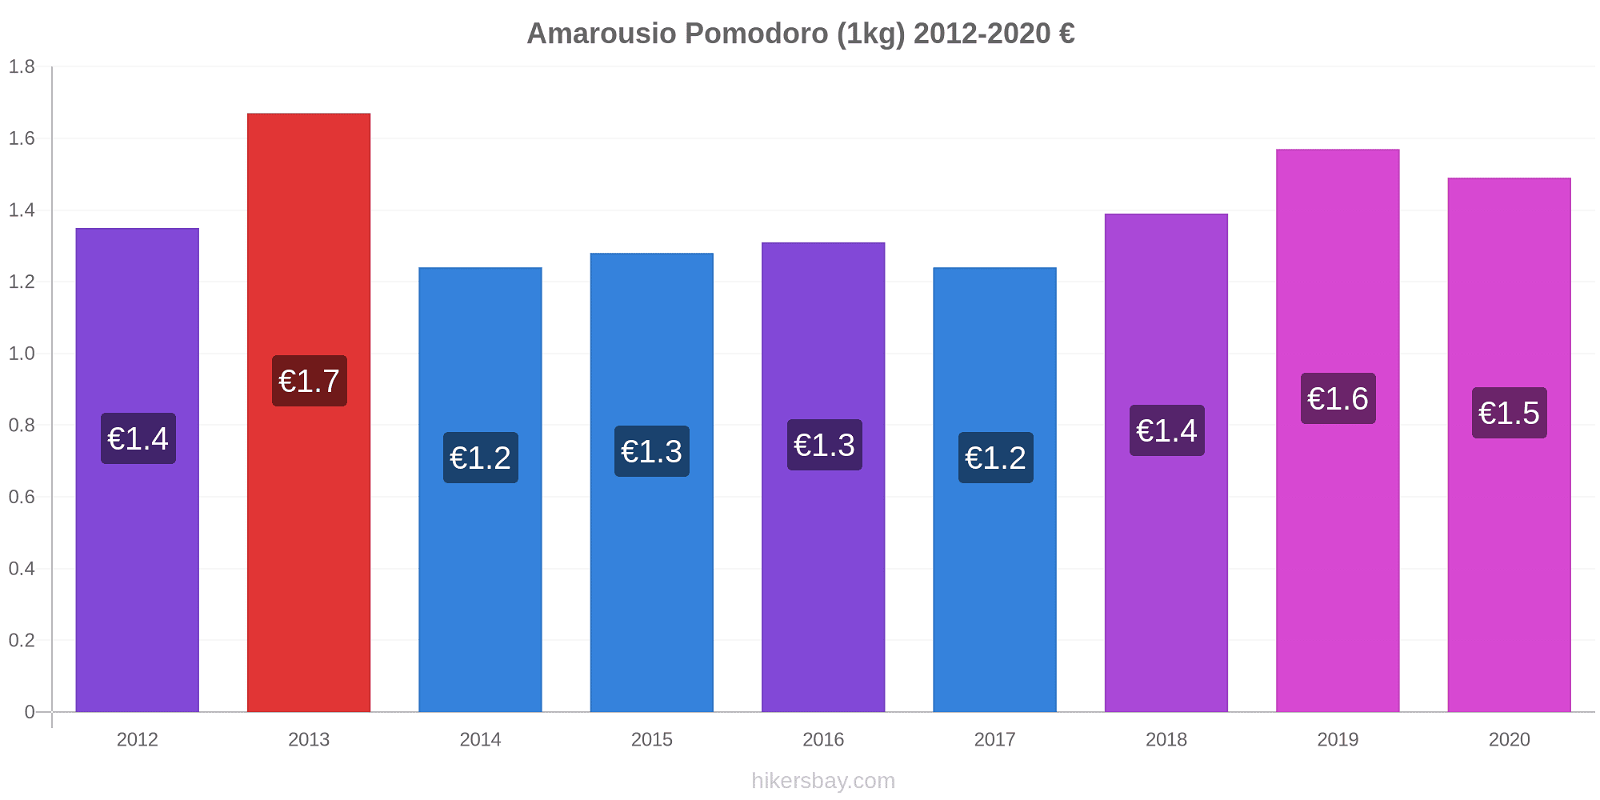 Amarousio variazioni di prezzo Pomodoro (1kg) hikersbay.com